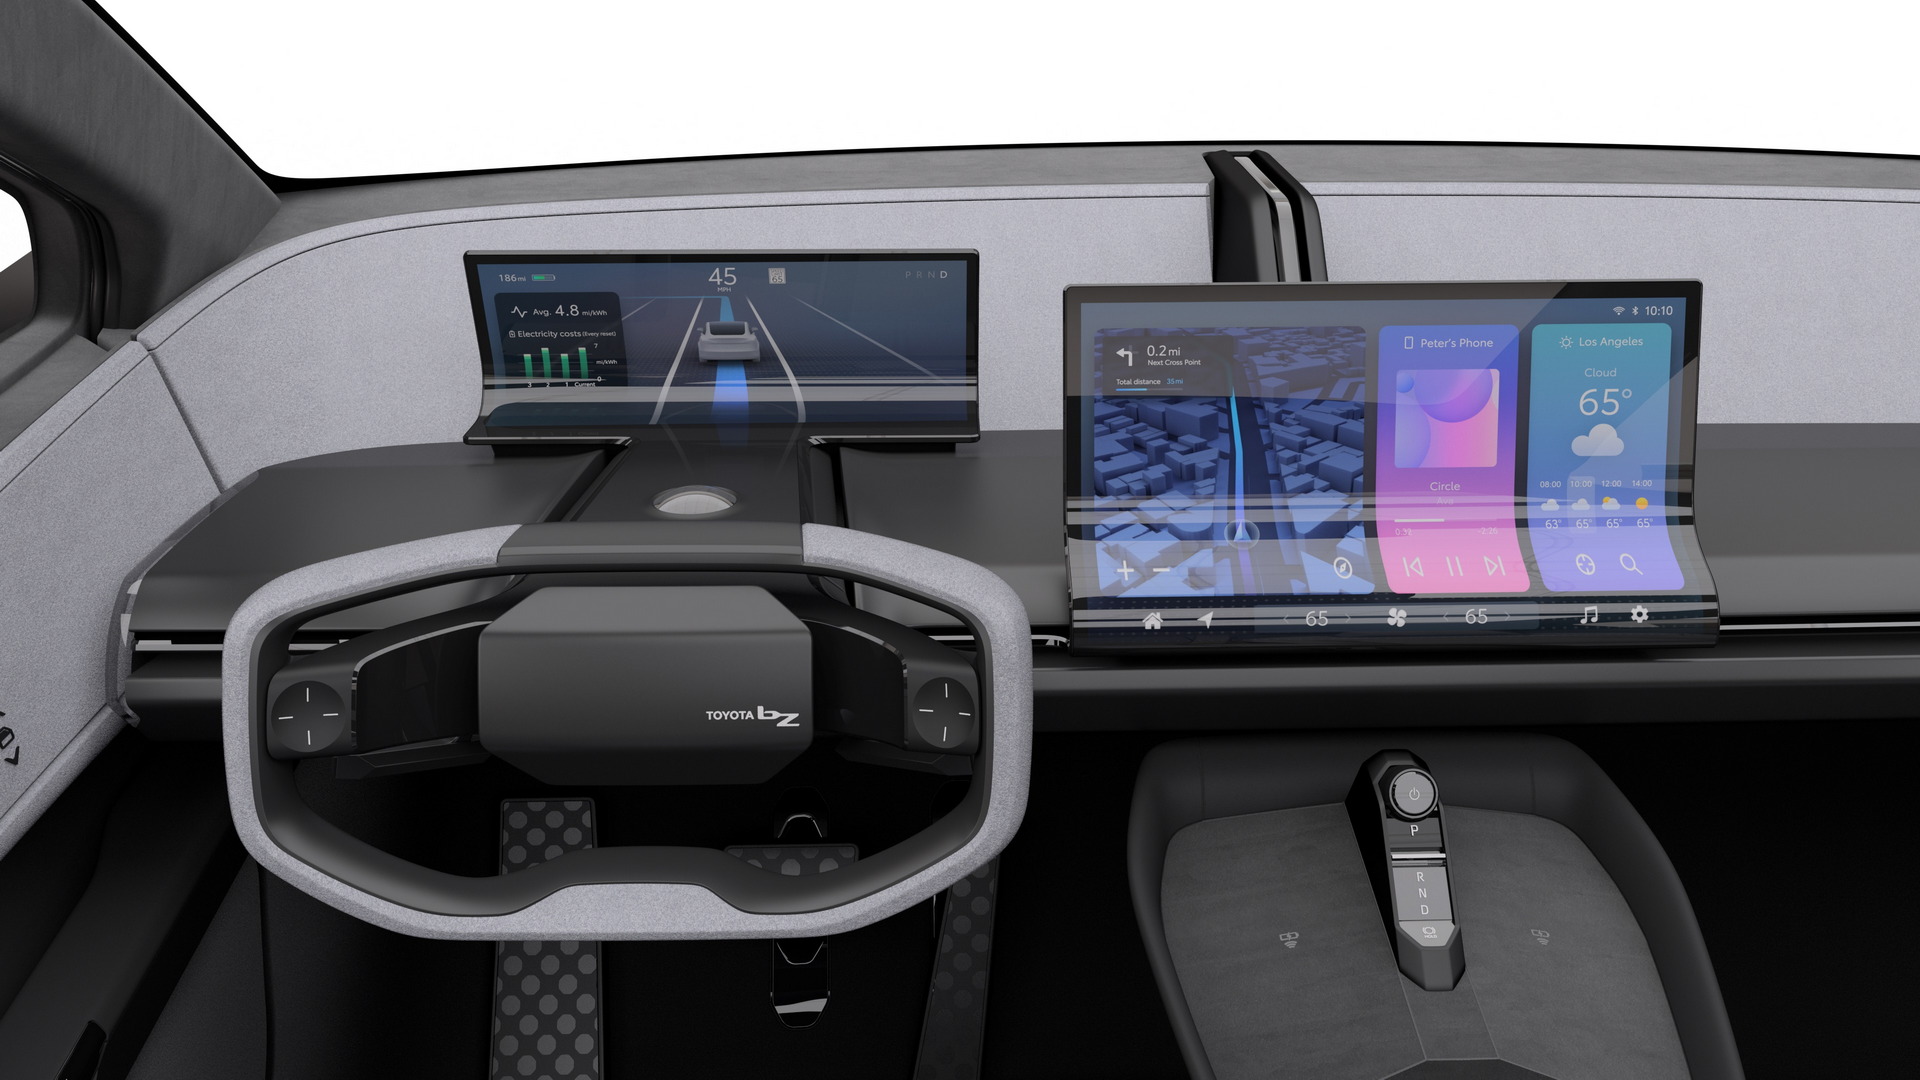 تدشين تويوتا bZ كومباكت SUV الكهربائية الجديدة كلياً بتصميم انسيابي وداخلية عصرية 6